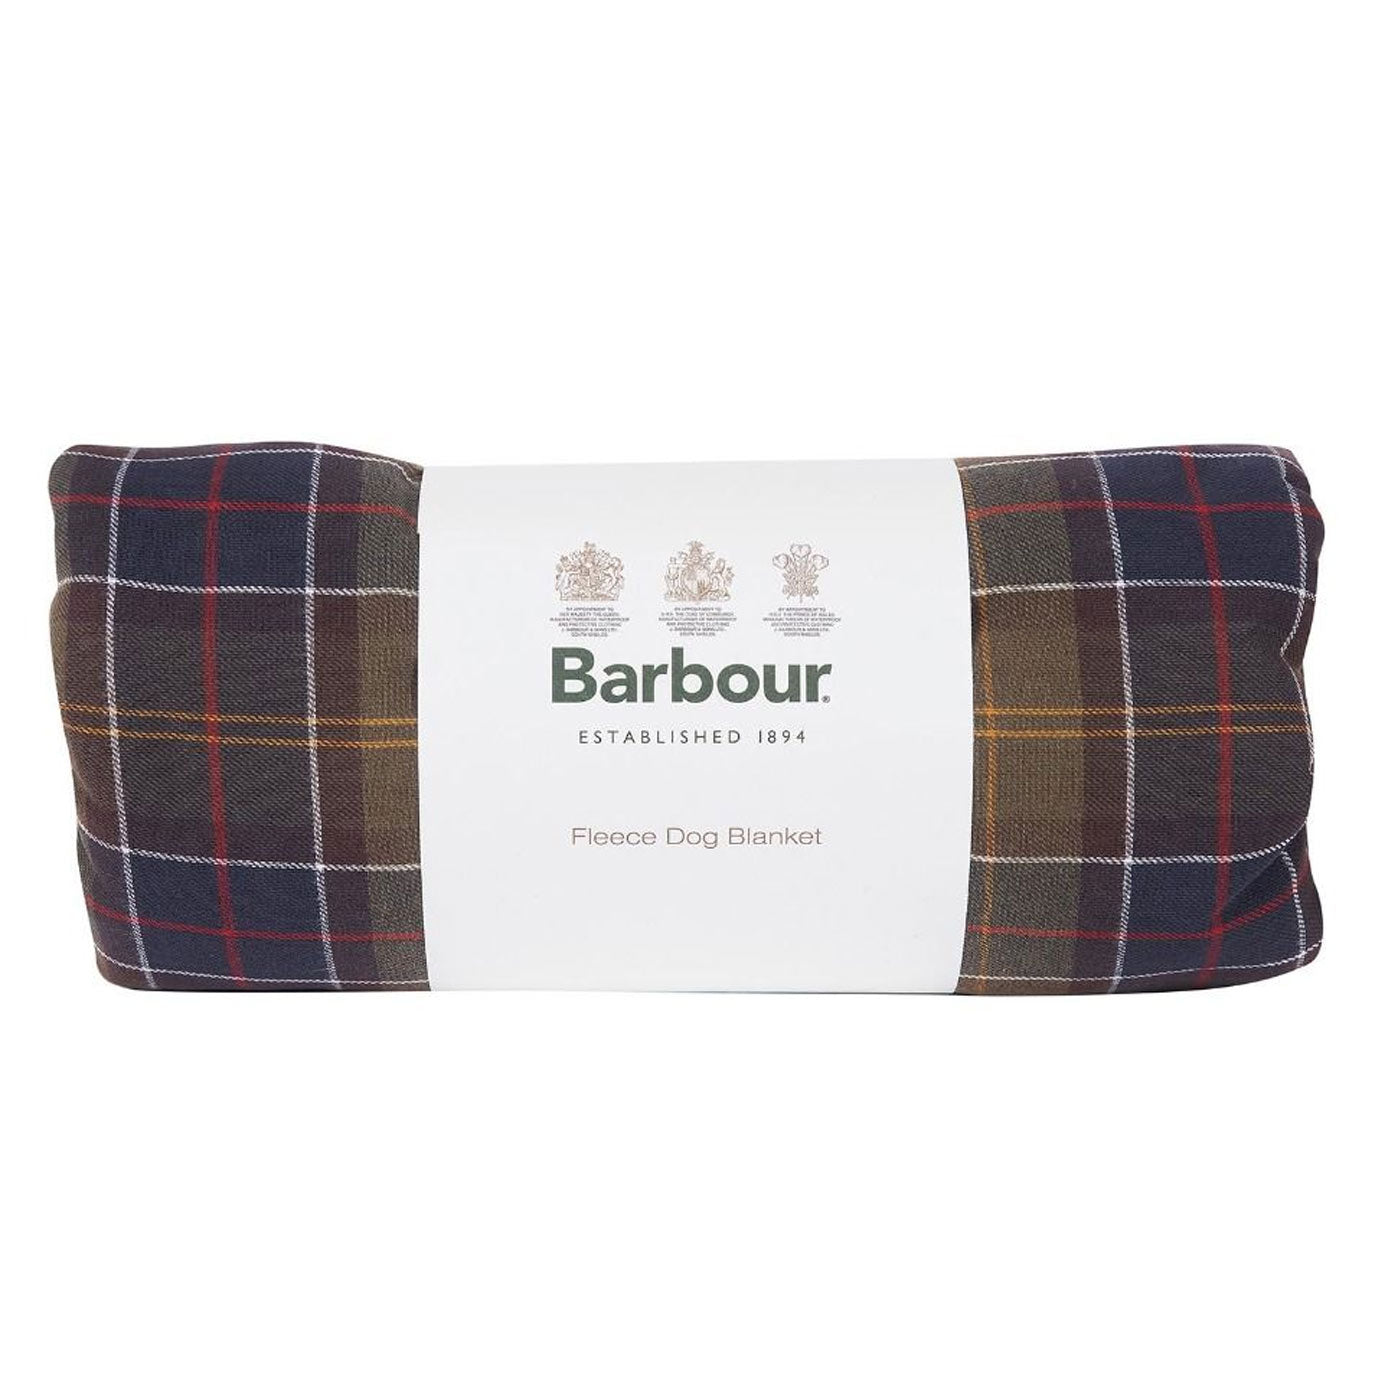 Barbour Dog Blanket